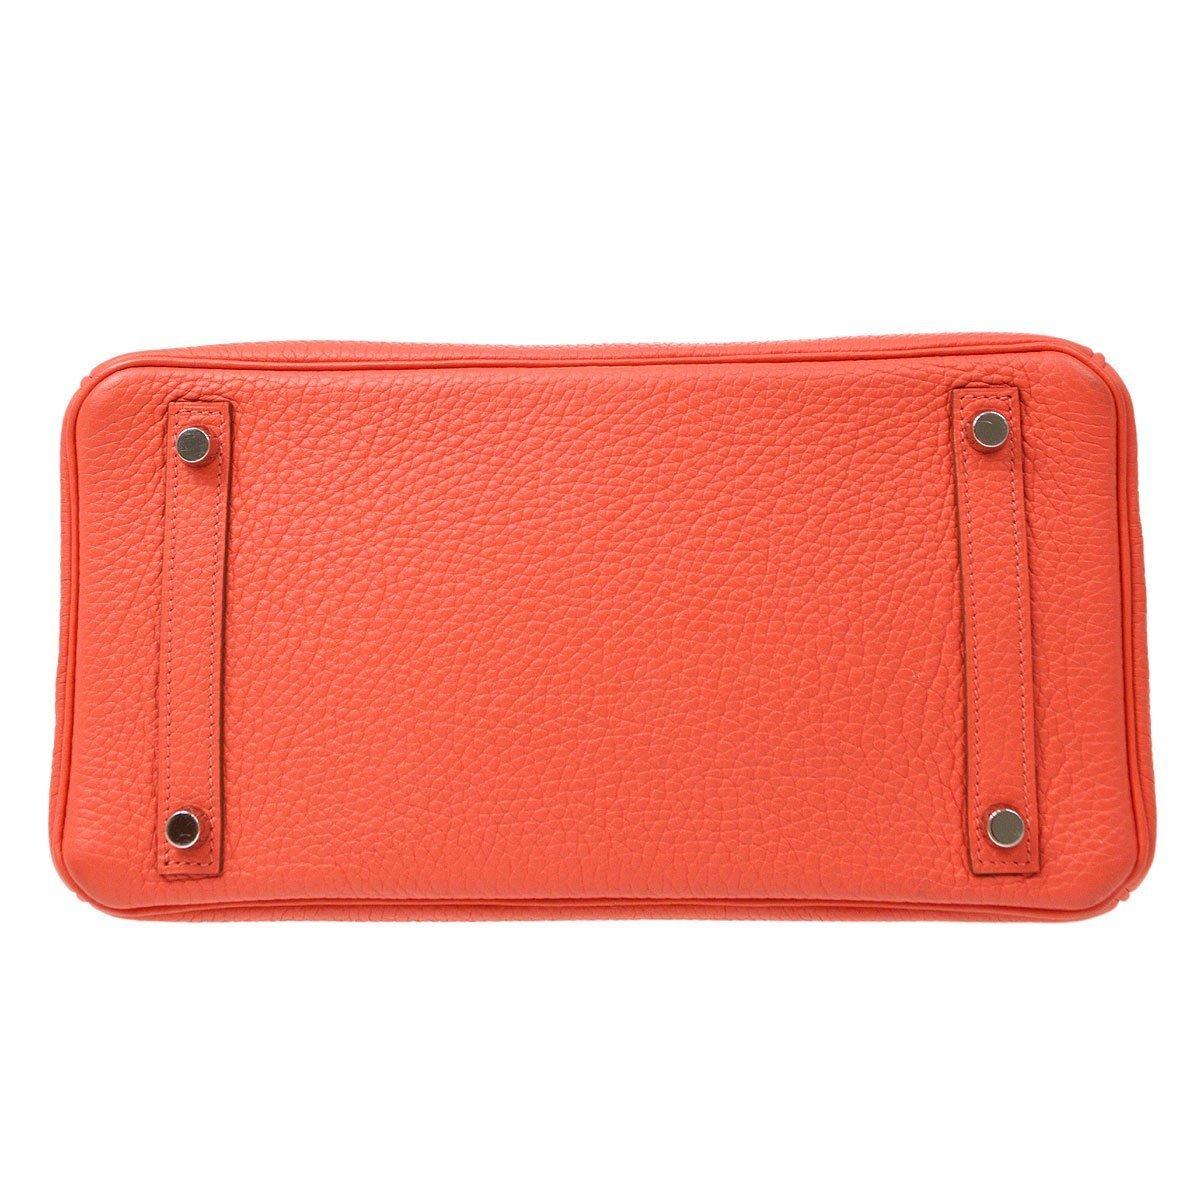 red orange purse